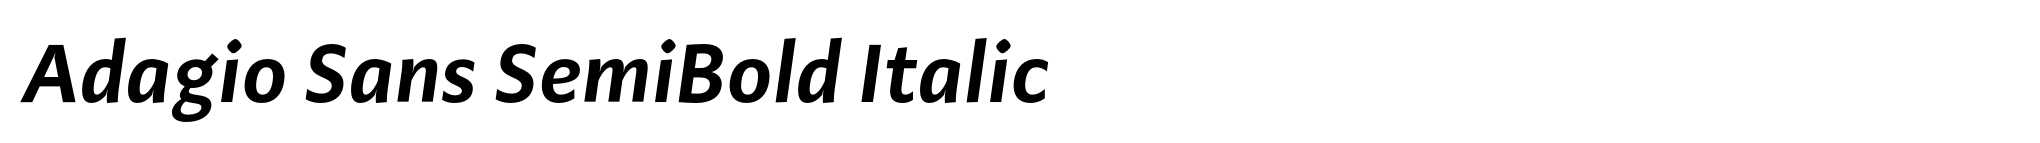 Adagio Sans SemiBold Italic image